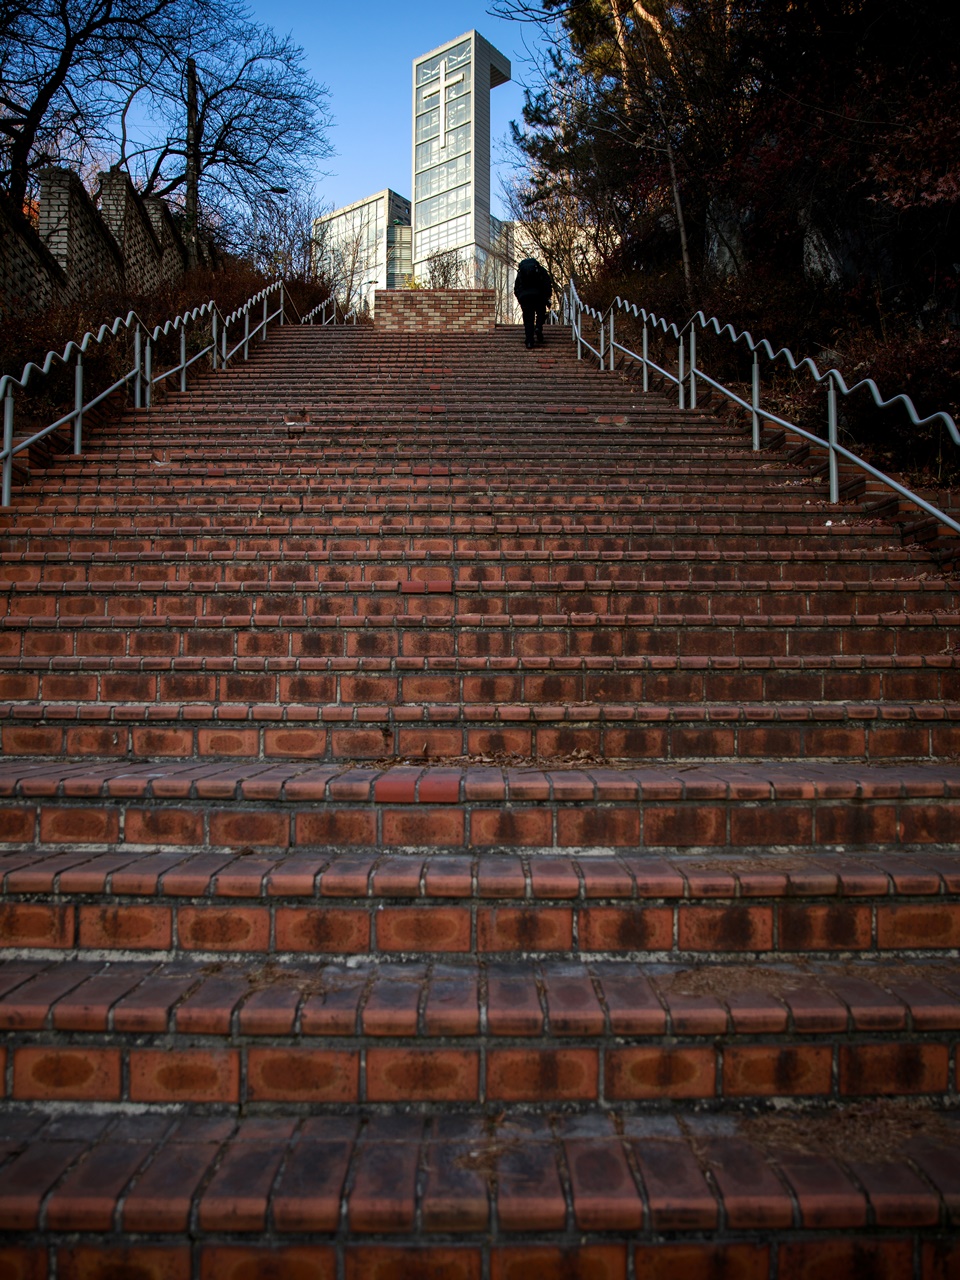 높고 가파른 계단. 동망봉 터널 위에 있는 일명 ‘천국의 계단’이다. 아파트 단지 사이에 껴 있는 이 계단이 골목길이었다는 사실을 아는 사람은 많지 않다. [사진=오상민 작가]